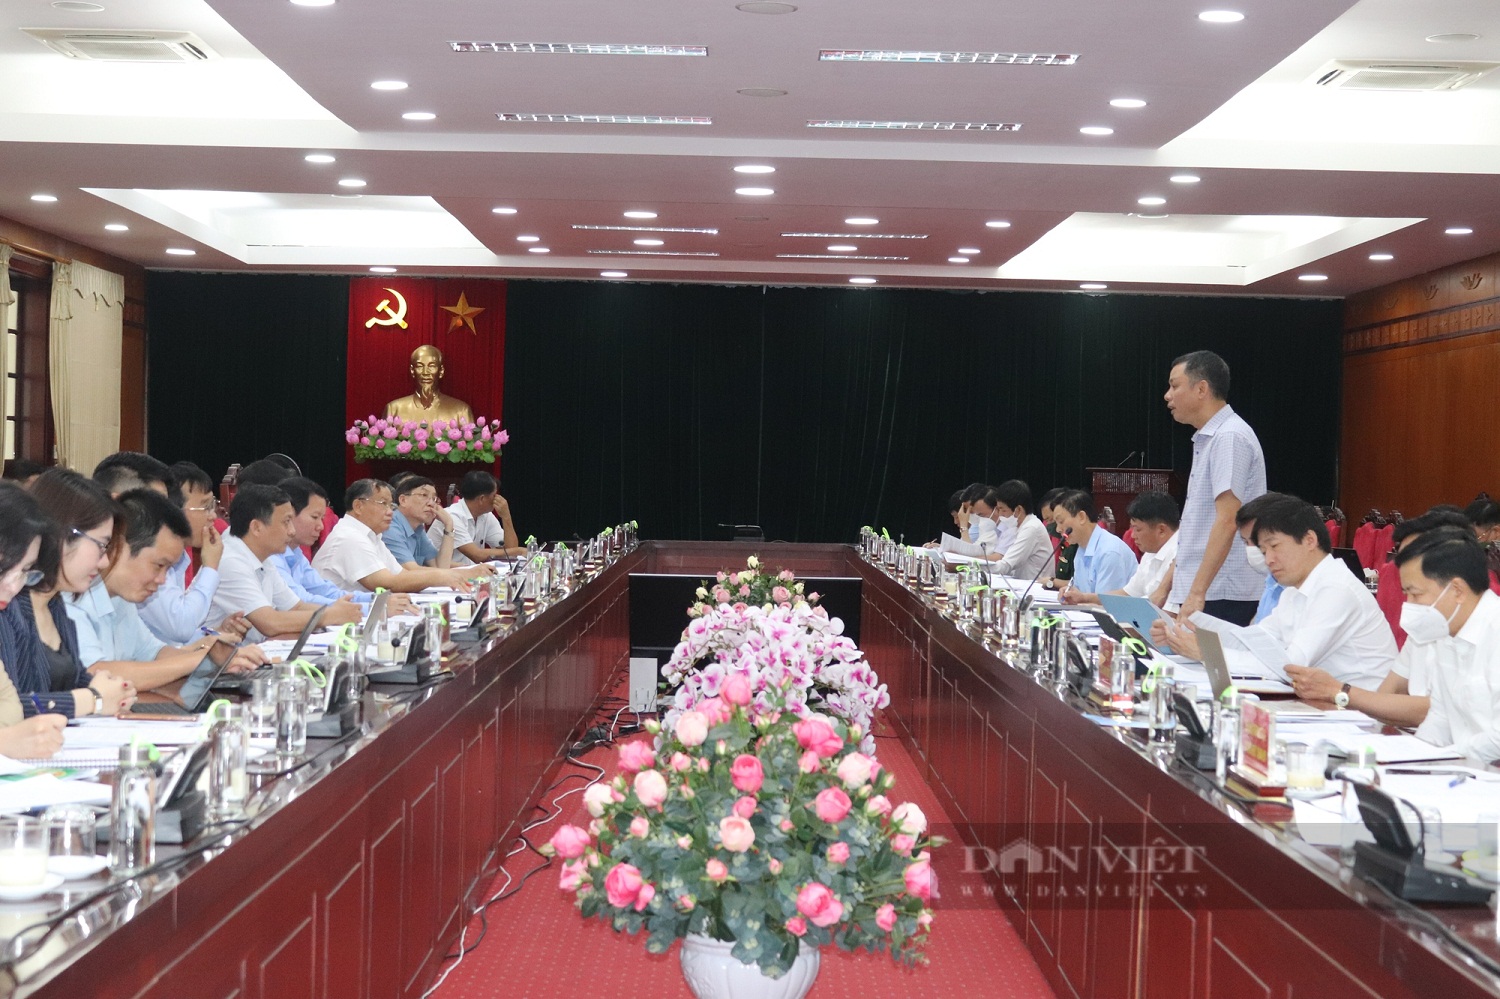 Sự kiện Thủ tướng đối thoại với nông dân tại Sơn La sẽ tạo sức lan tỏa rất lớn